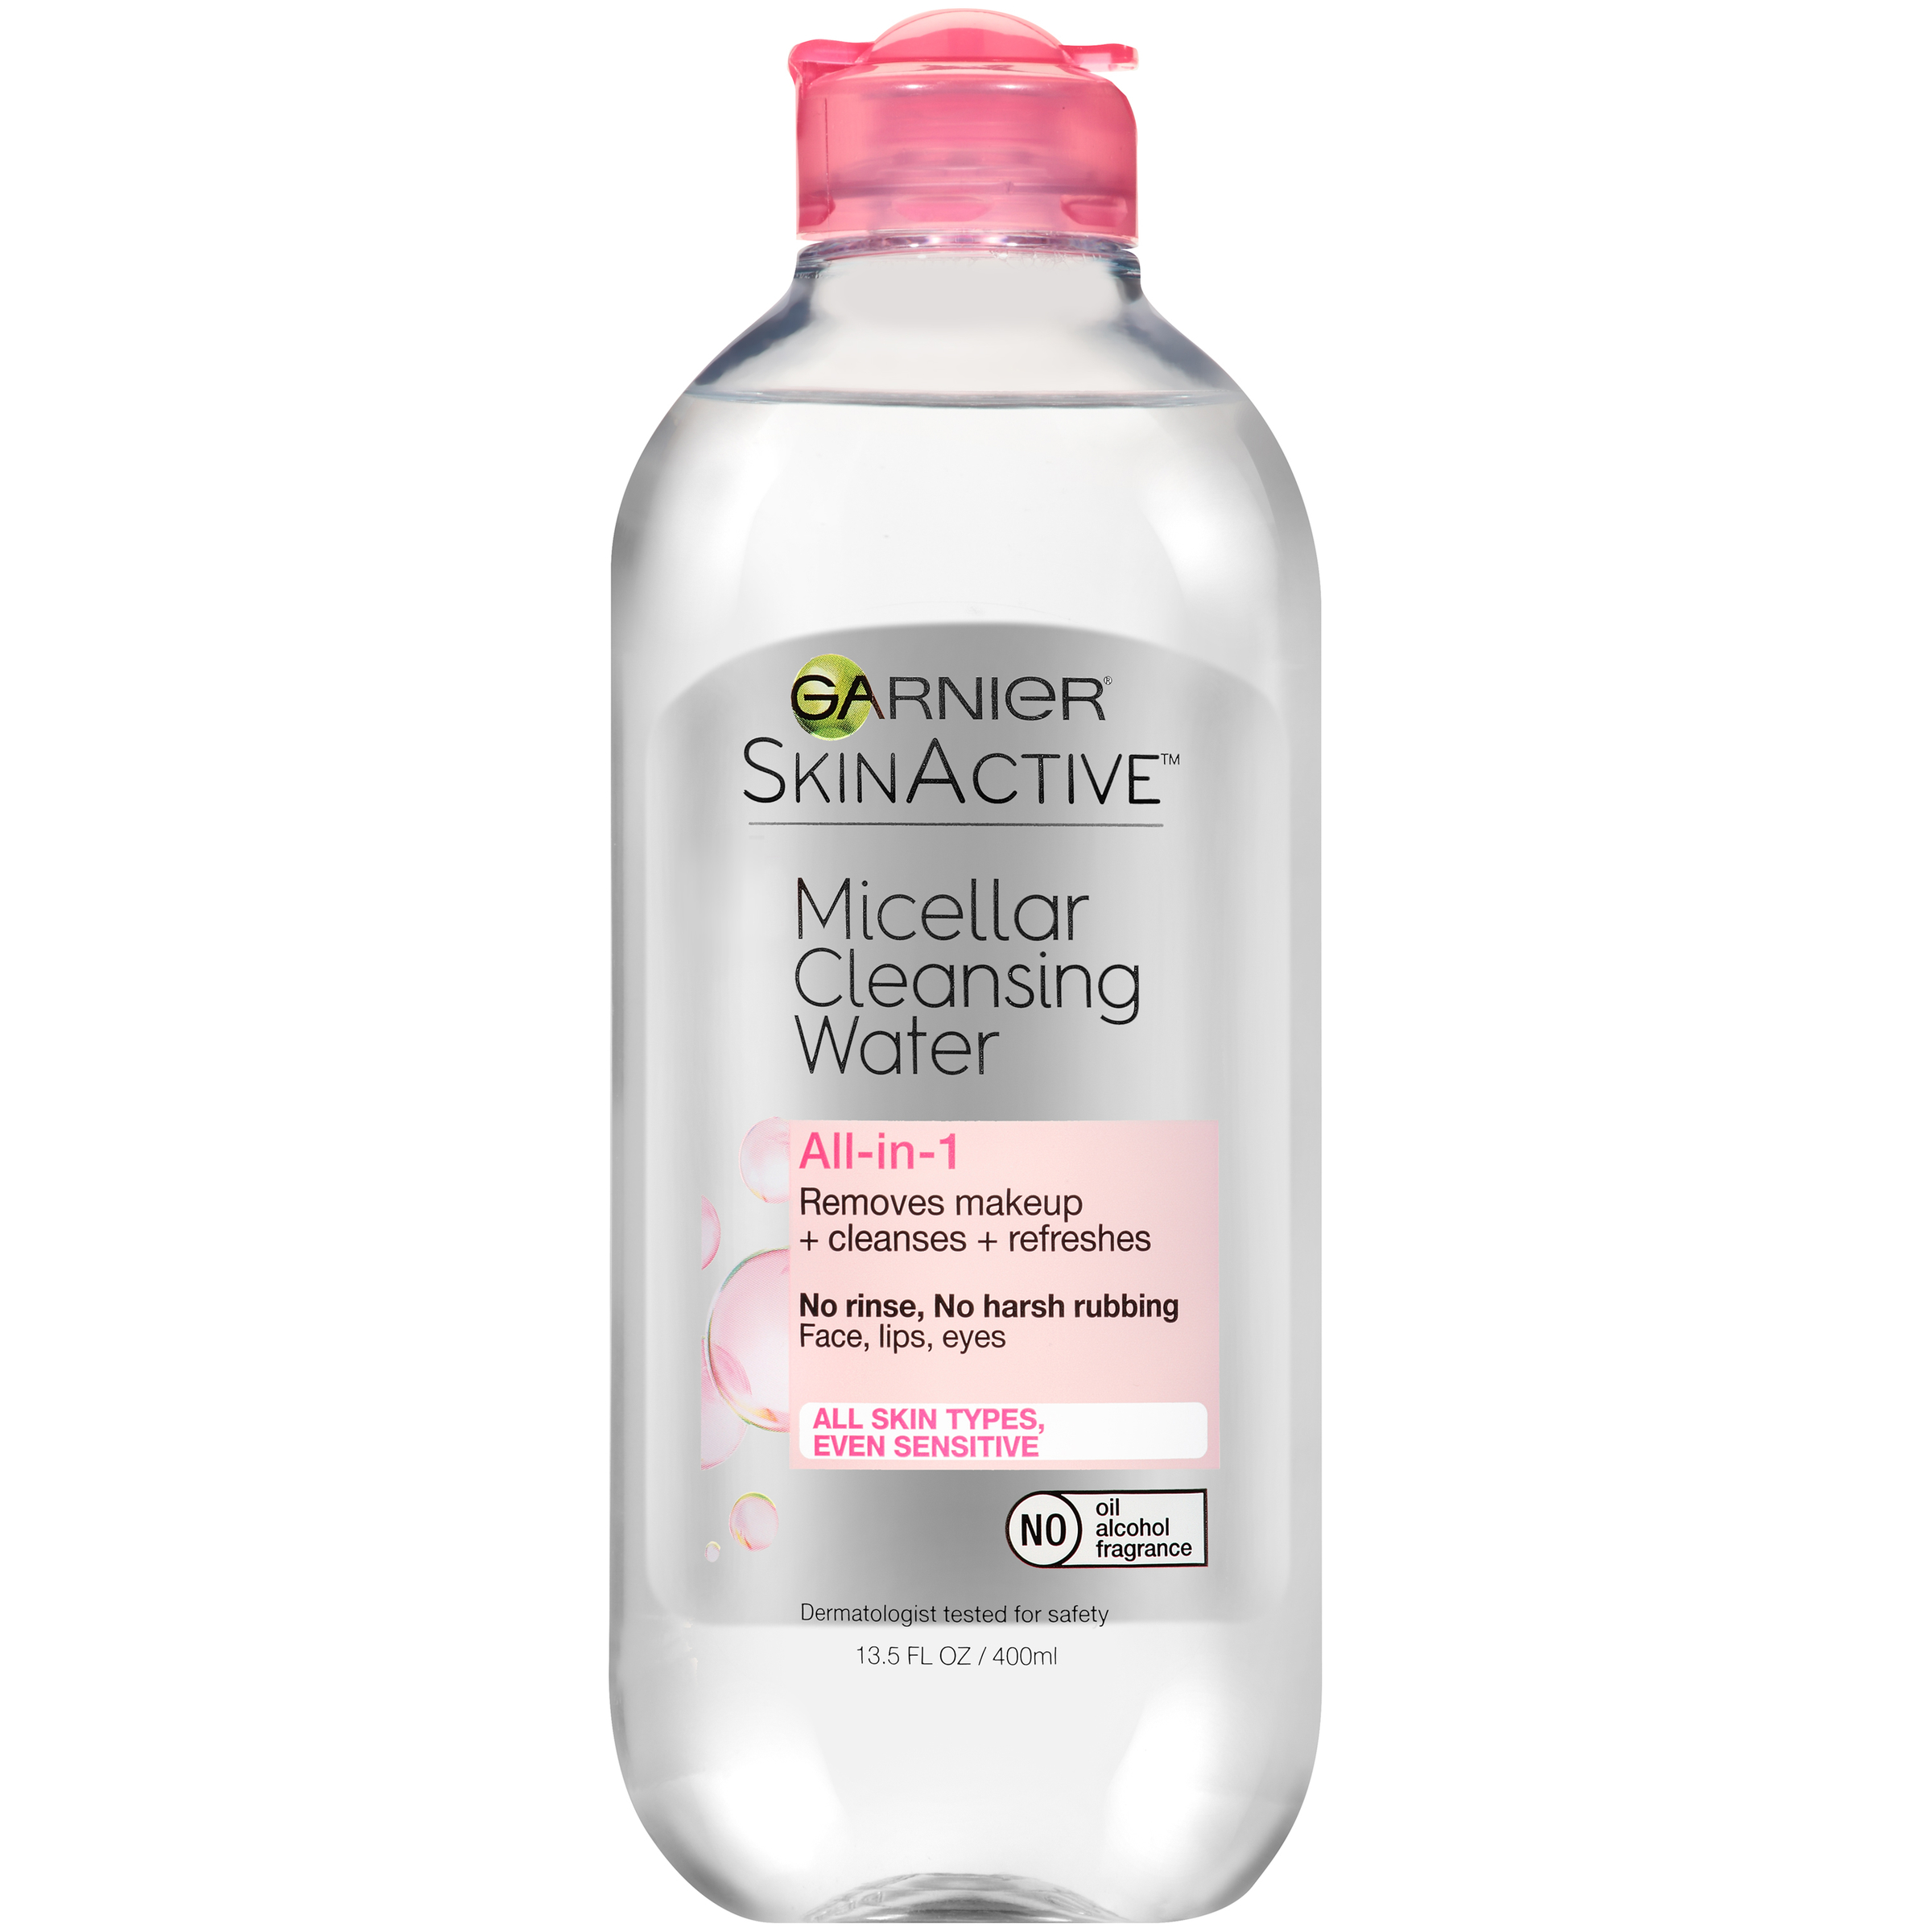 Garnier Skin Activeâ„¢ Micellar Cleansing Water 13.5 fl. oz. Bottle